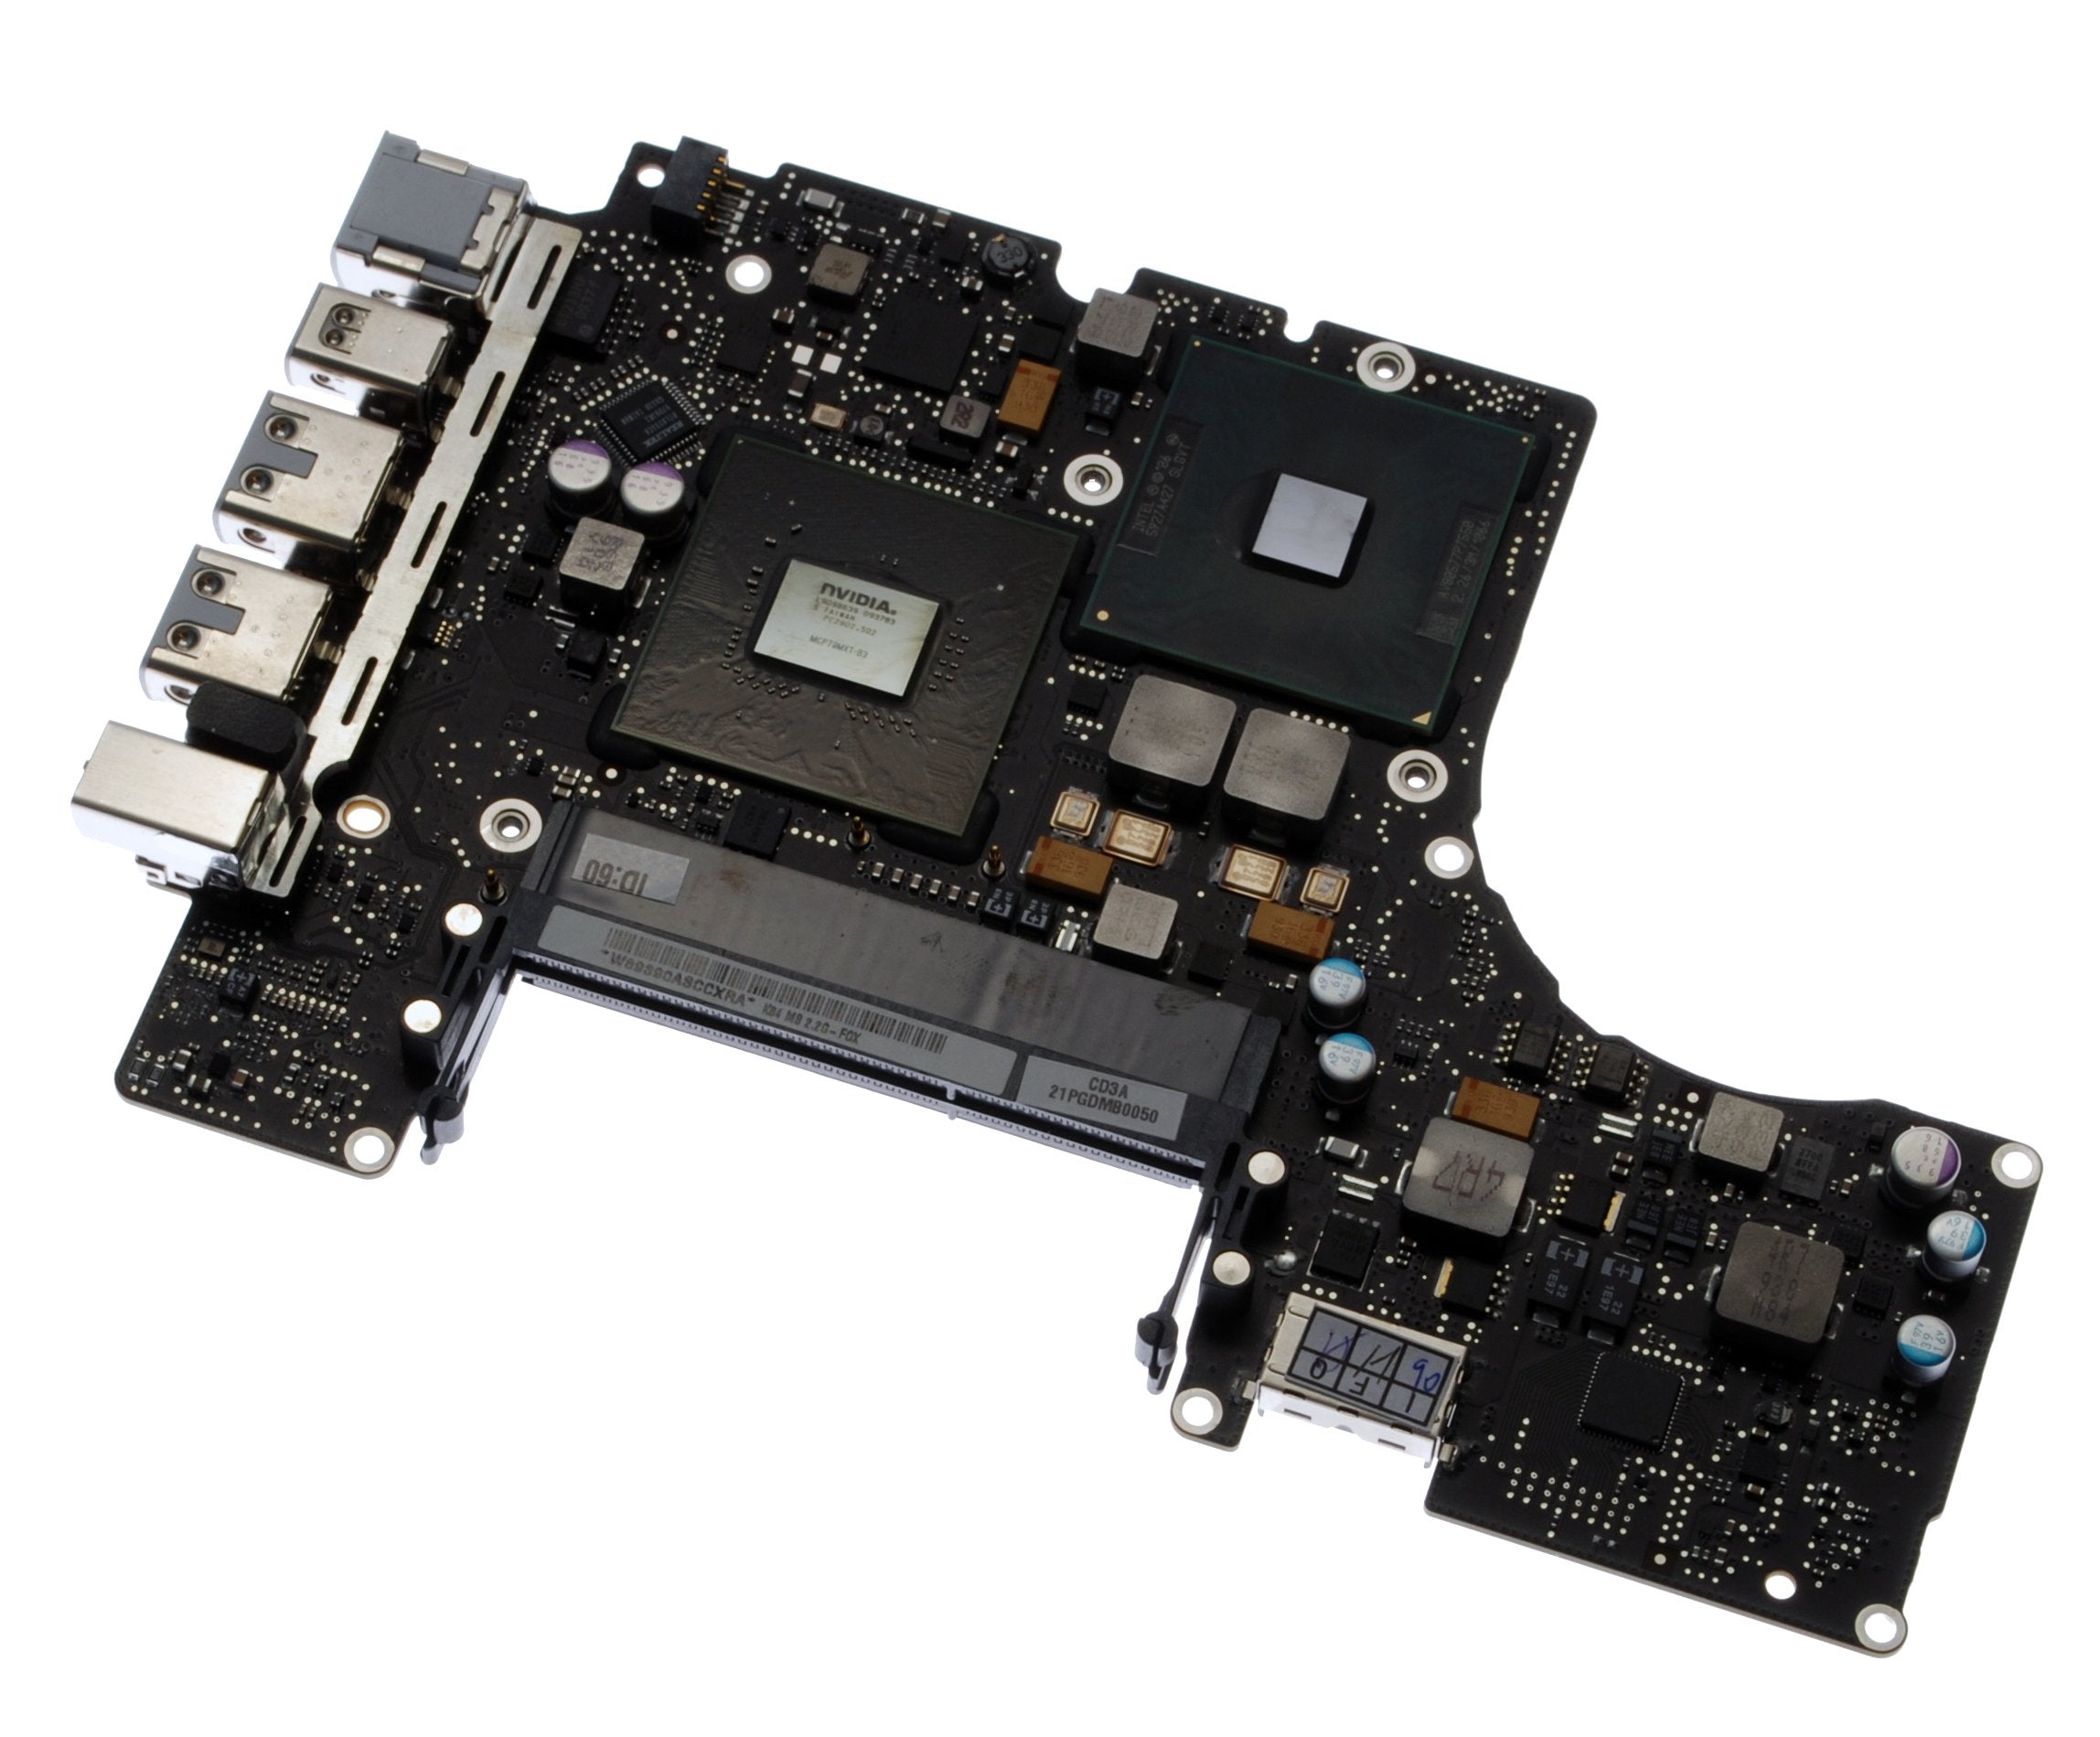 MacBook Unibody (A1342) 2.26 GHz Logic Board